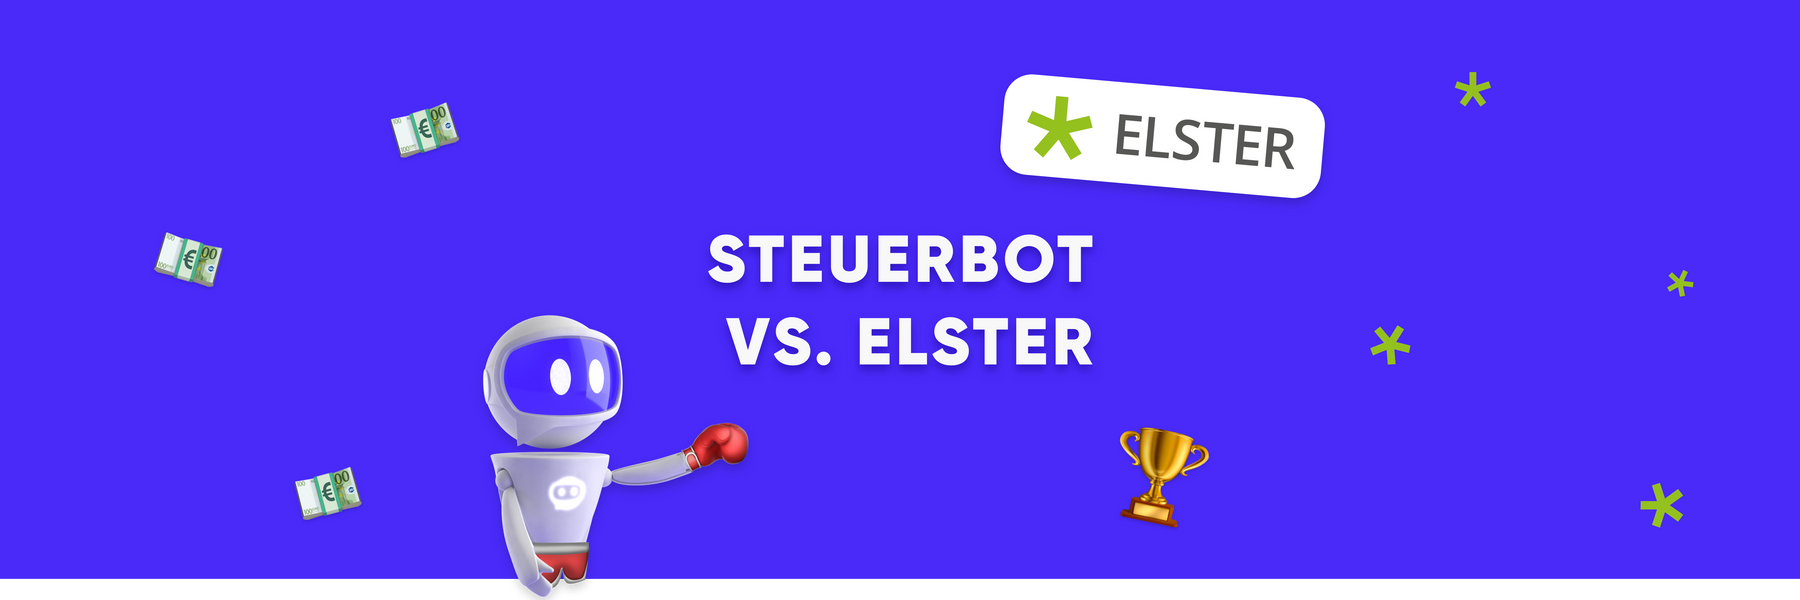 ELSTER vs. Steuerbot 🥊 